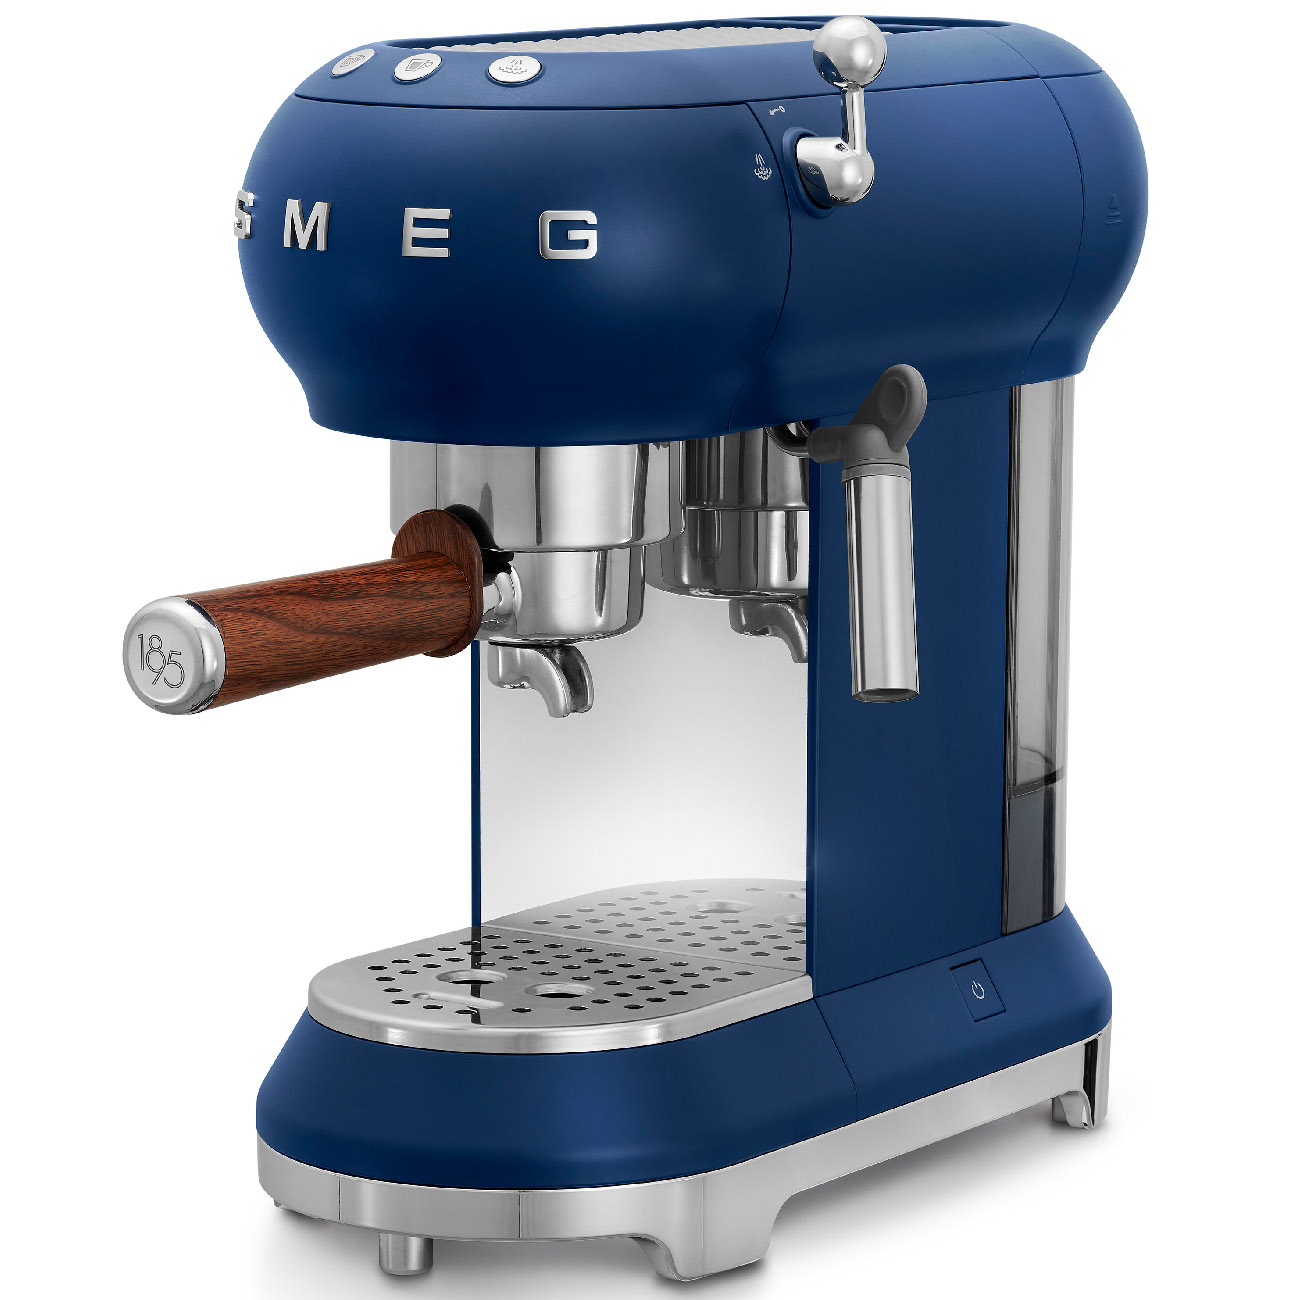 Macchina da caffè espresso Blu Lavazza 1895 manuale Smeg_4